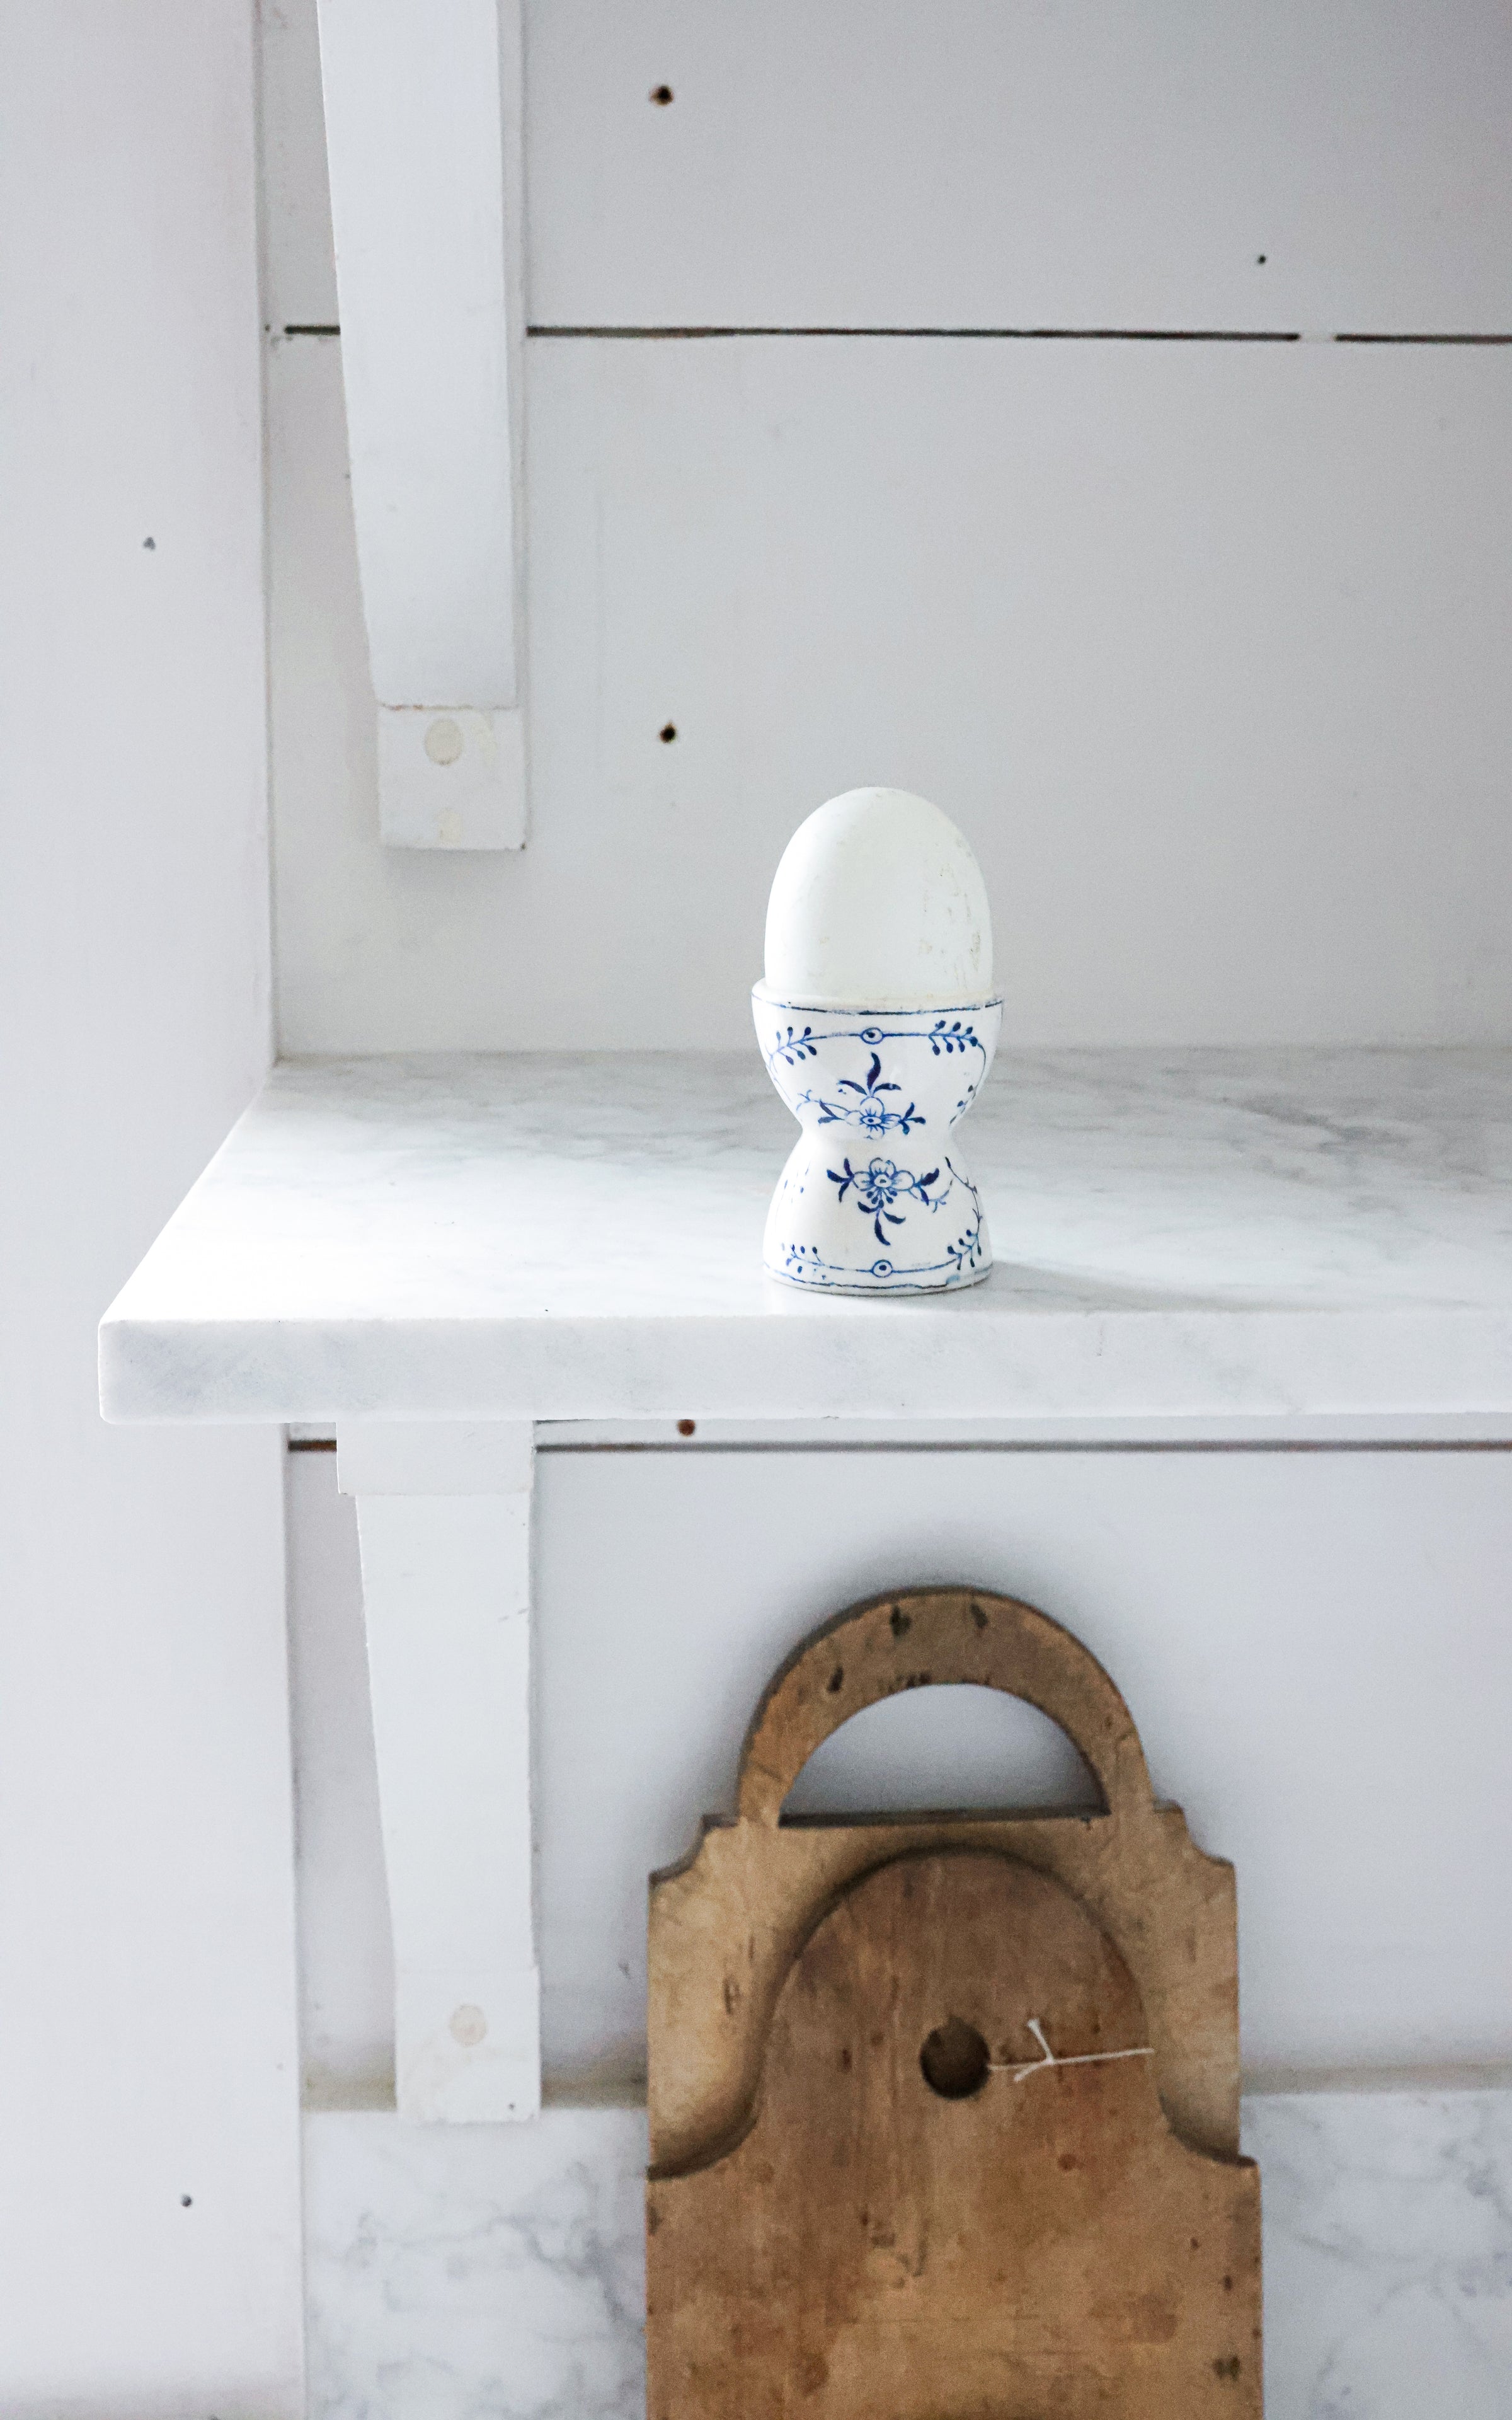 Vintage French Egg Cup & Swedish Egg Decoy